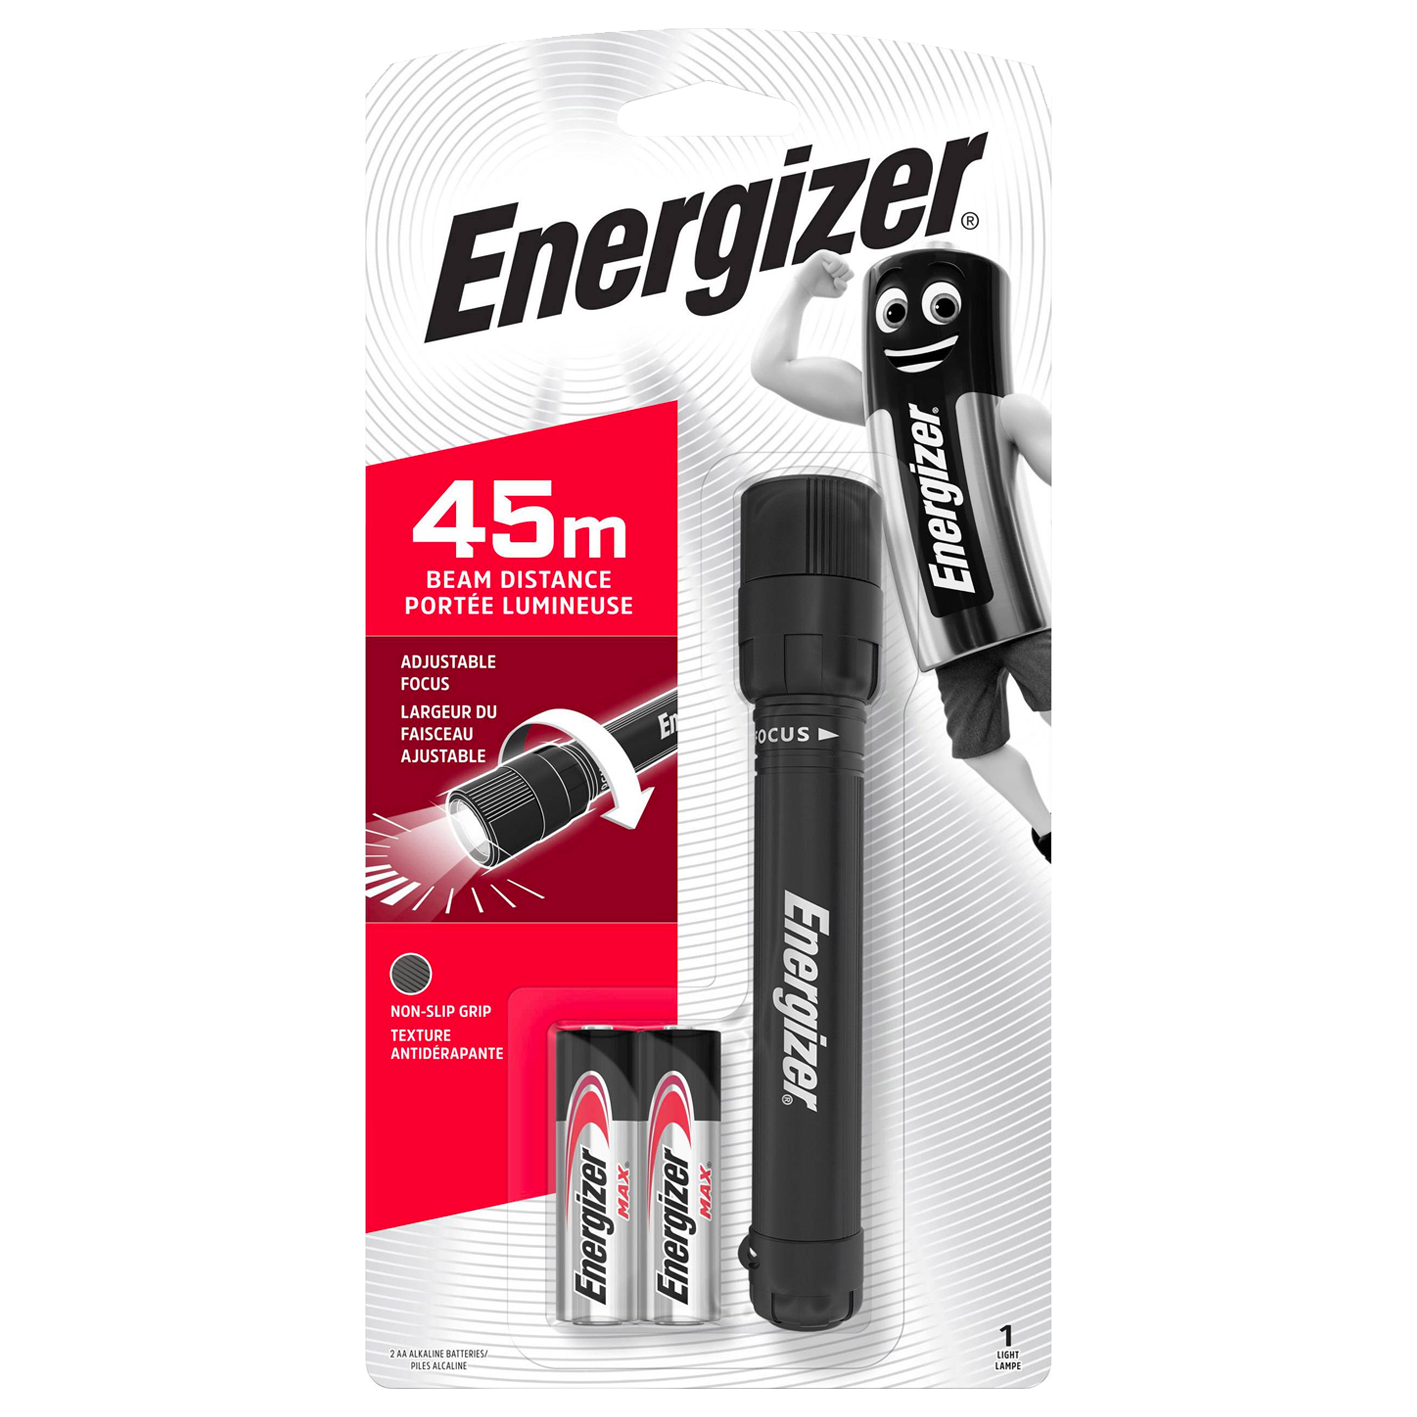 Energizer® X Focus LED+ 2 x AA-Batterien